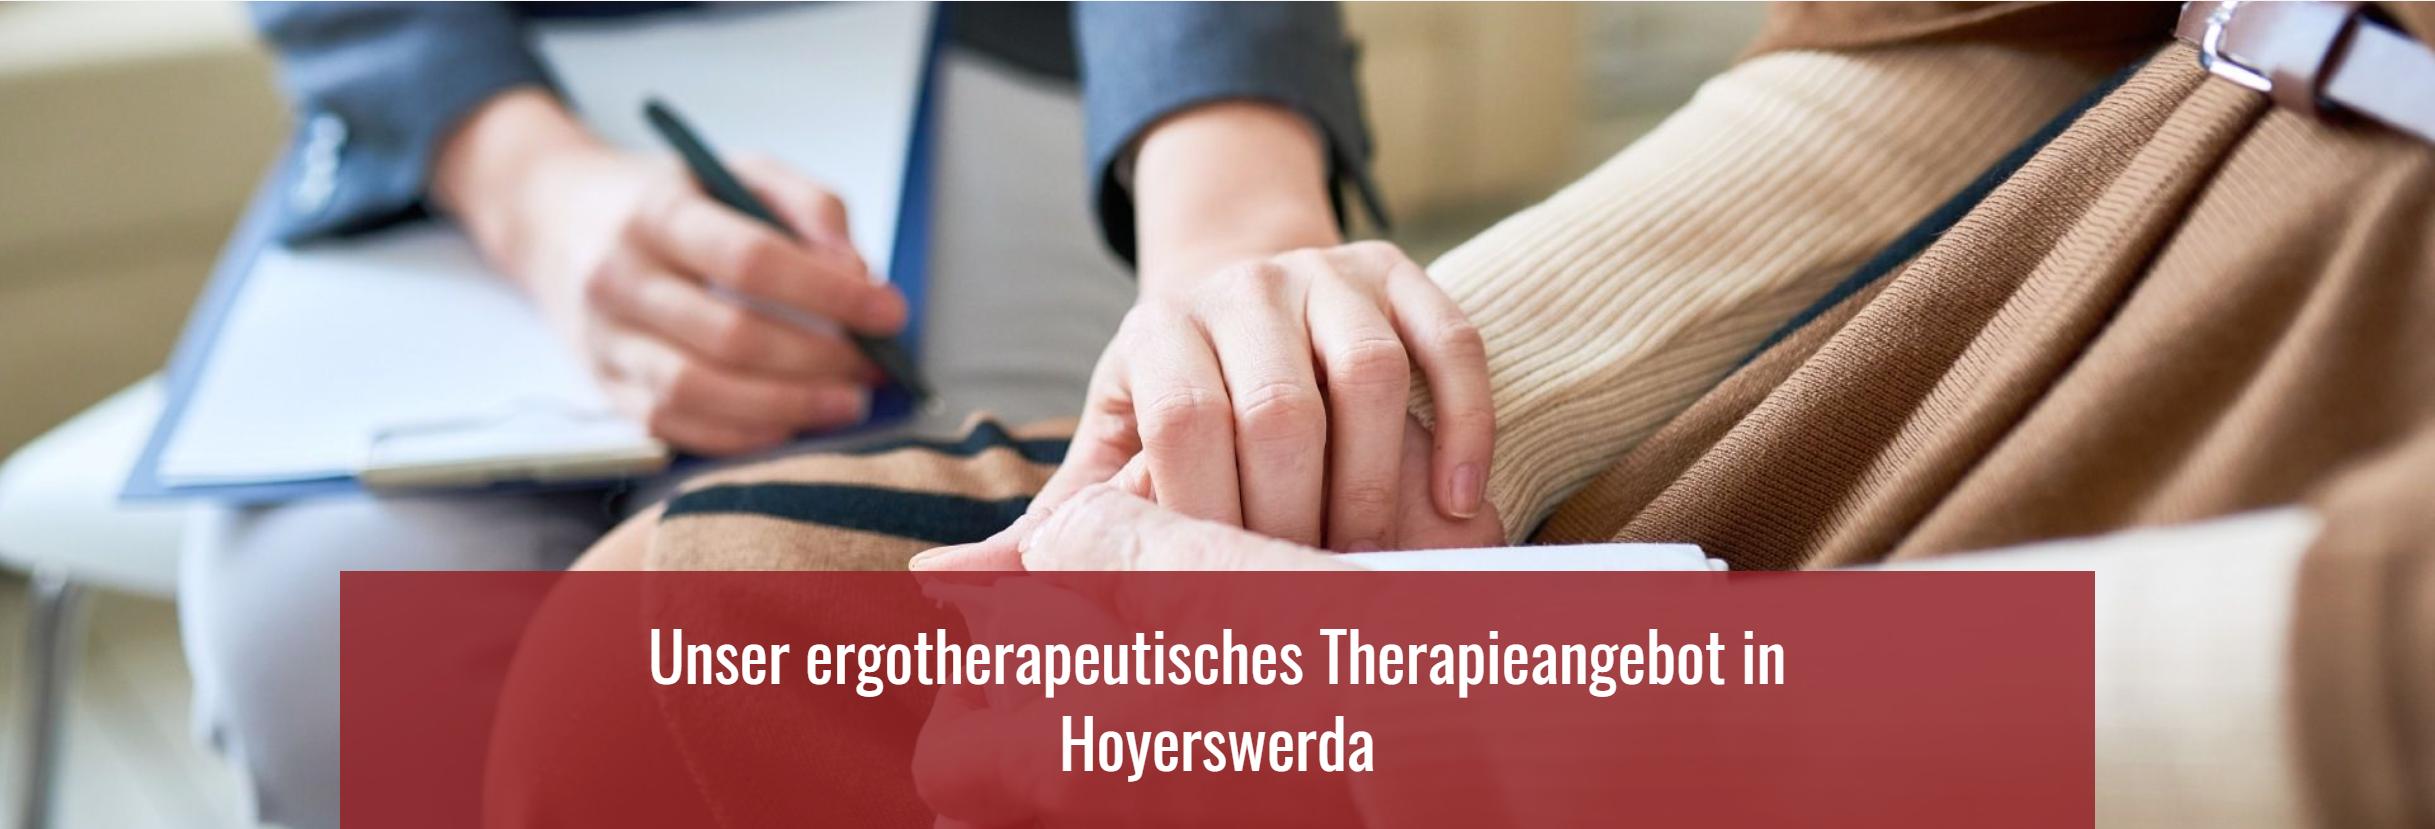 Unser ergotherapeutisches Therapieangebot in Hoyerswerda